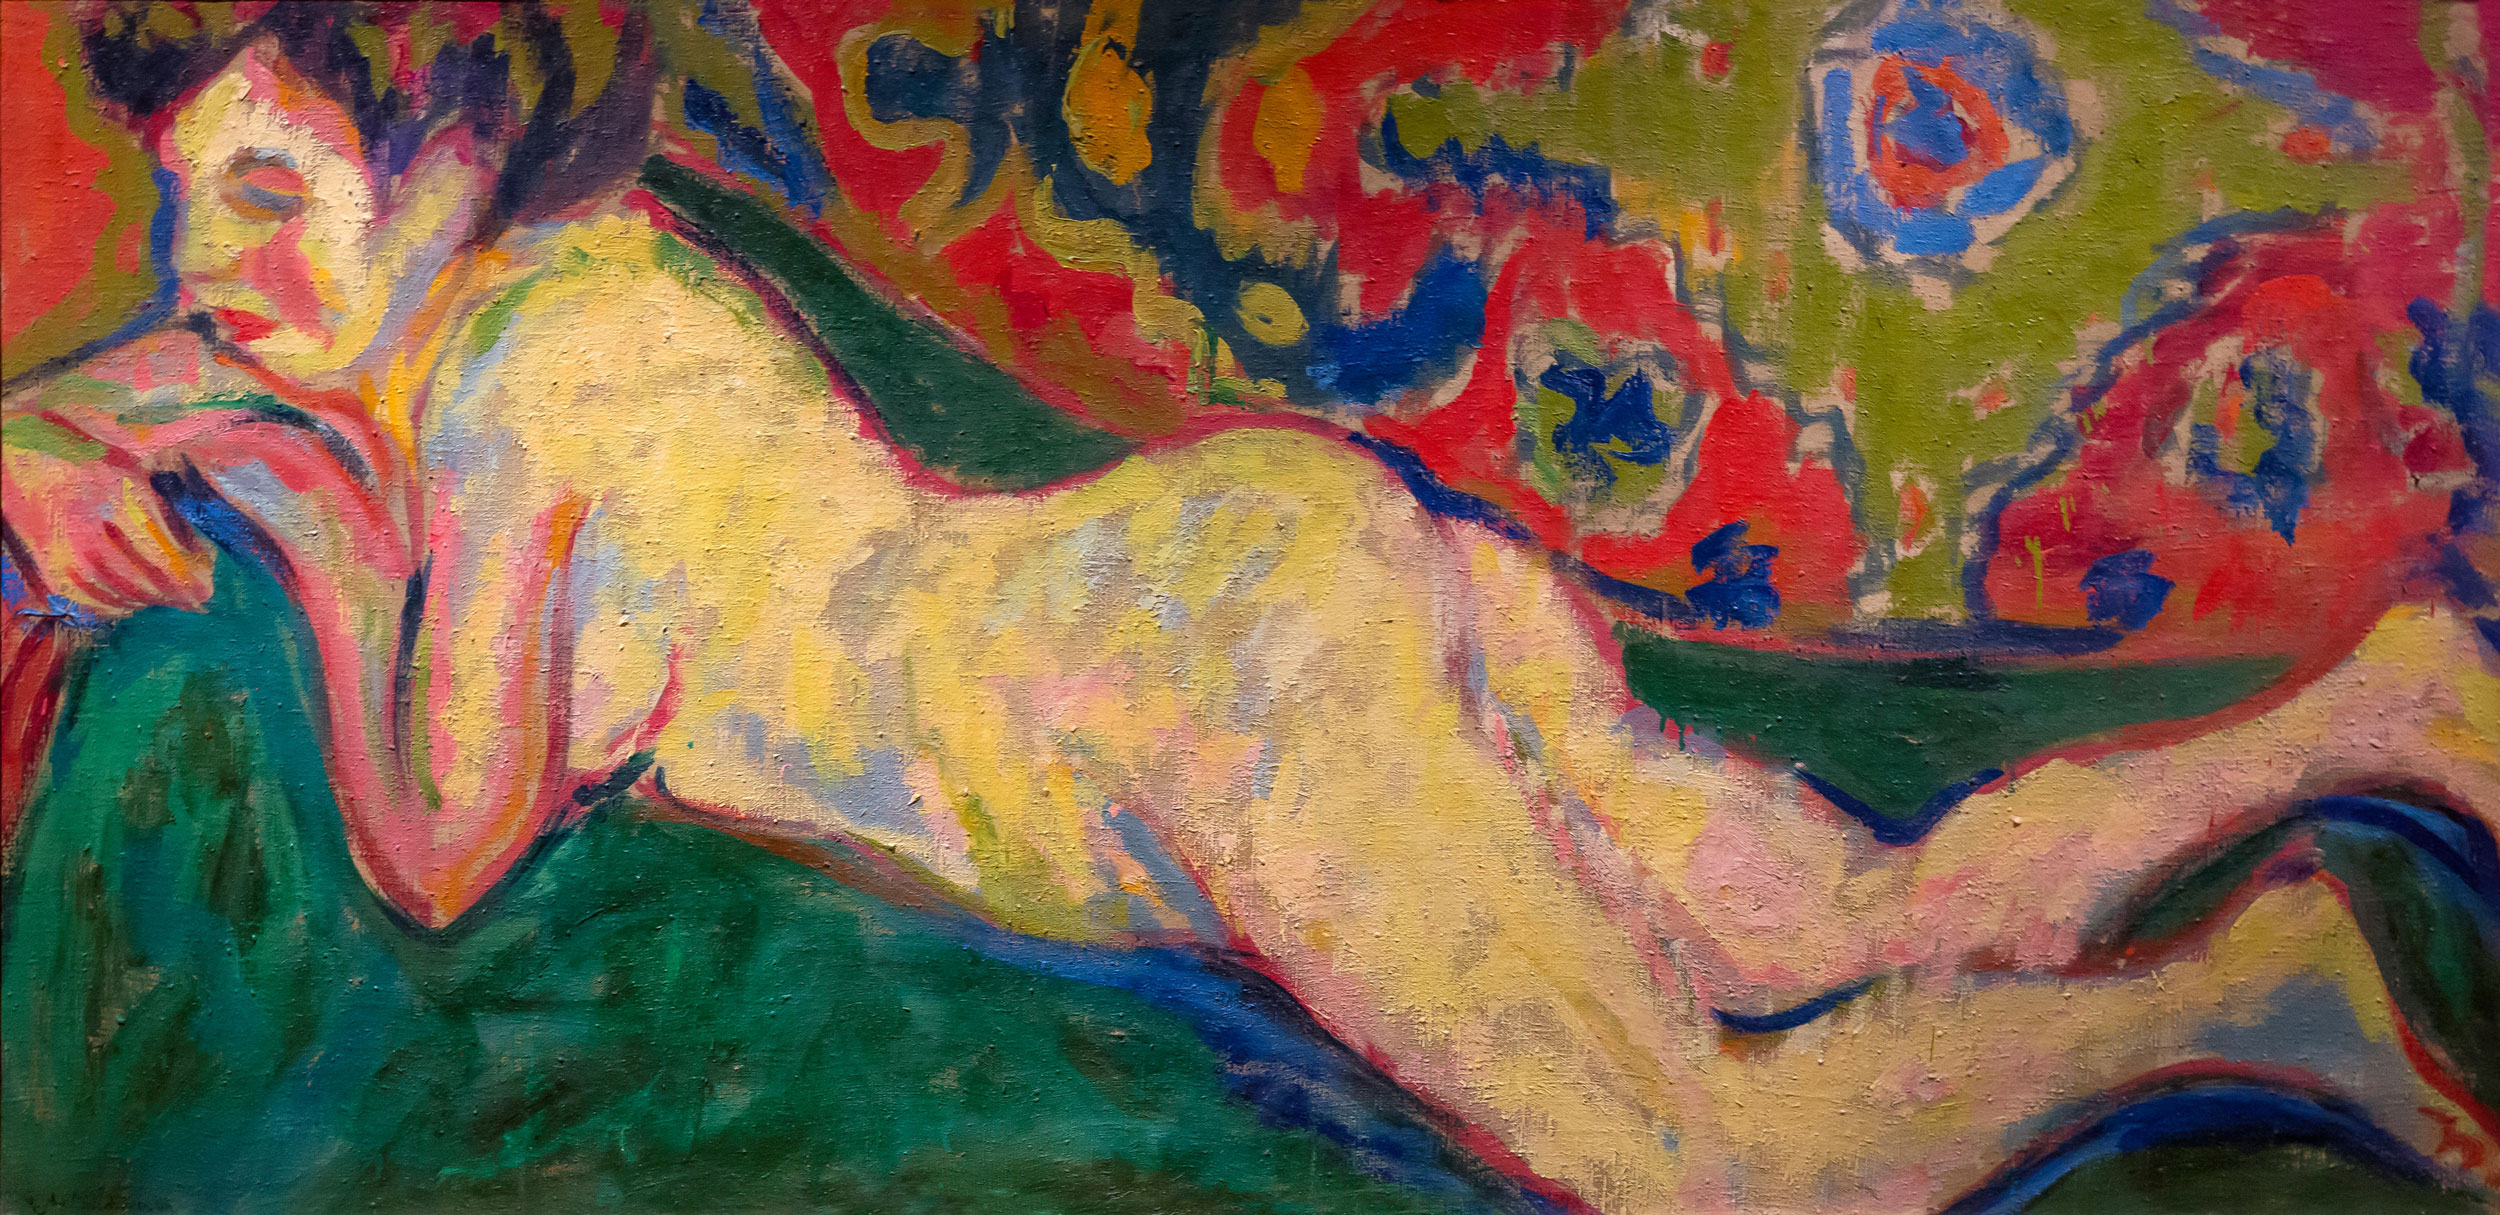 Ernst Ludwig Kirchner - Reclining Nude, 1909, Bilderrahmen weiß